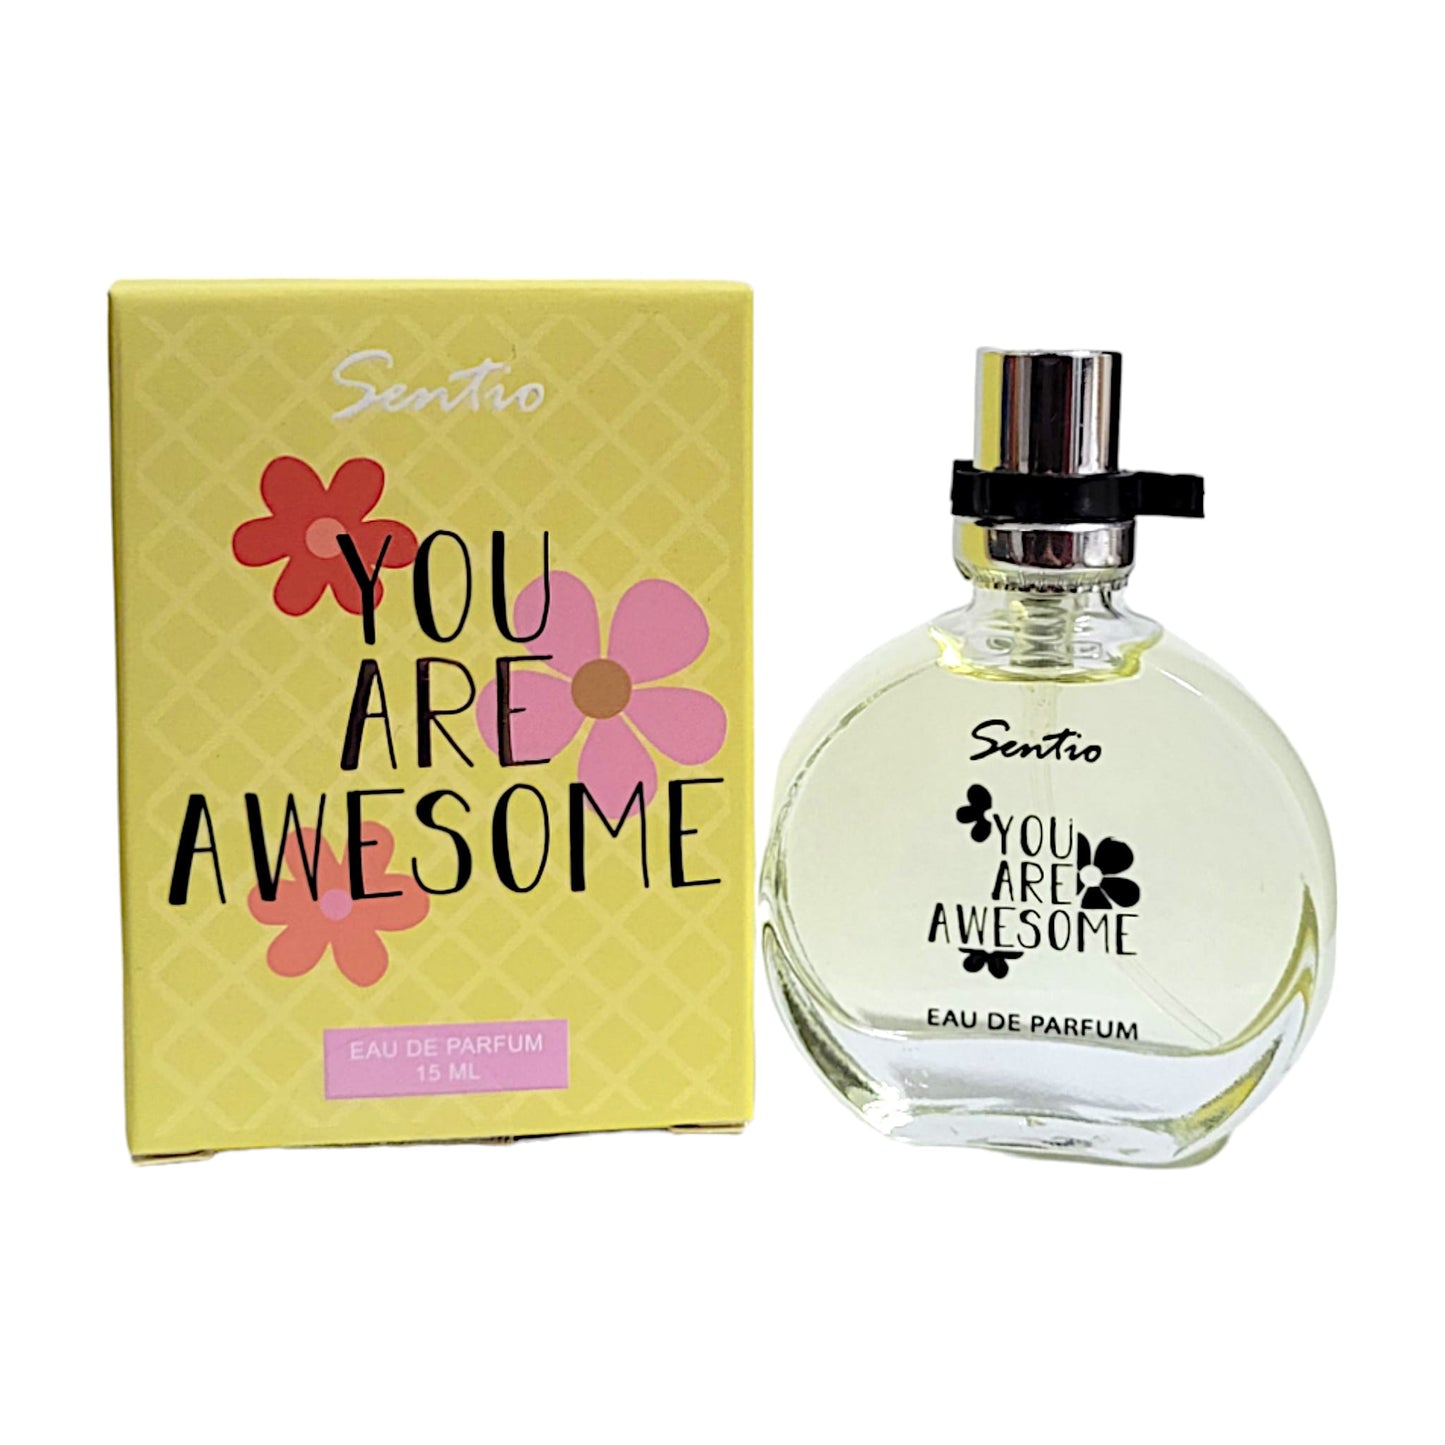 Sentio You Are Awesome Eau de Parfum 15 ml